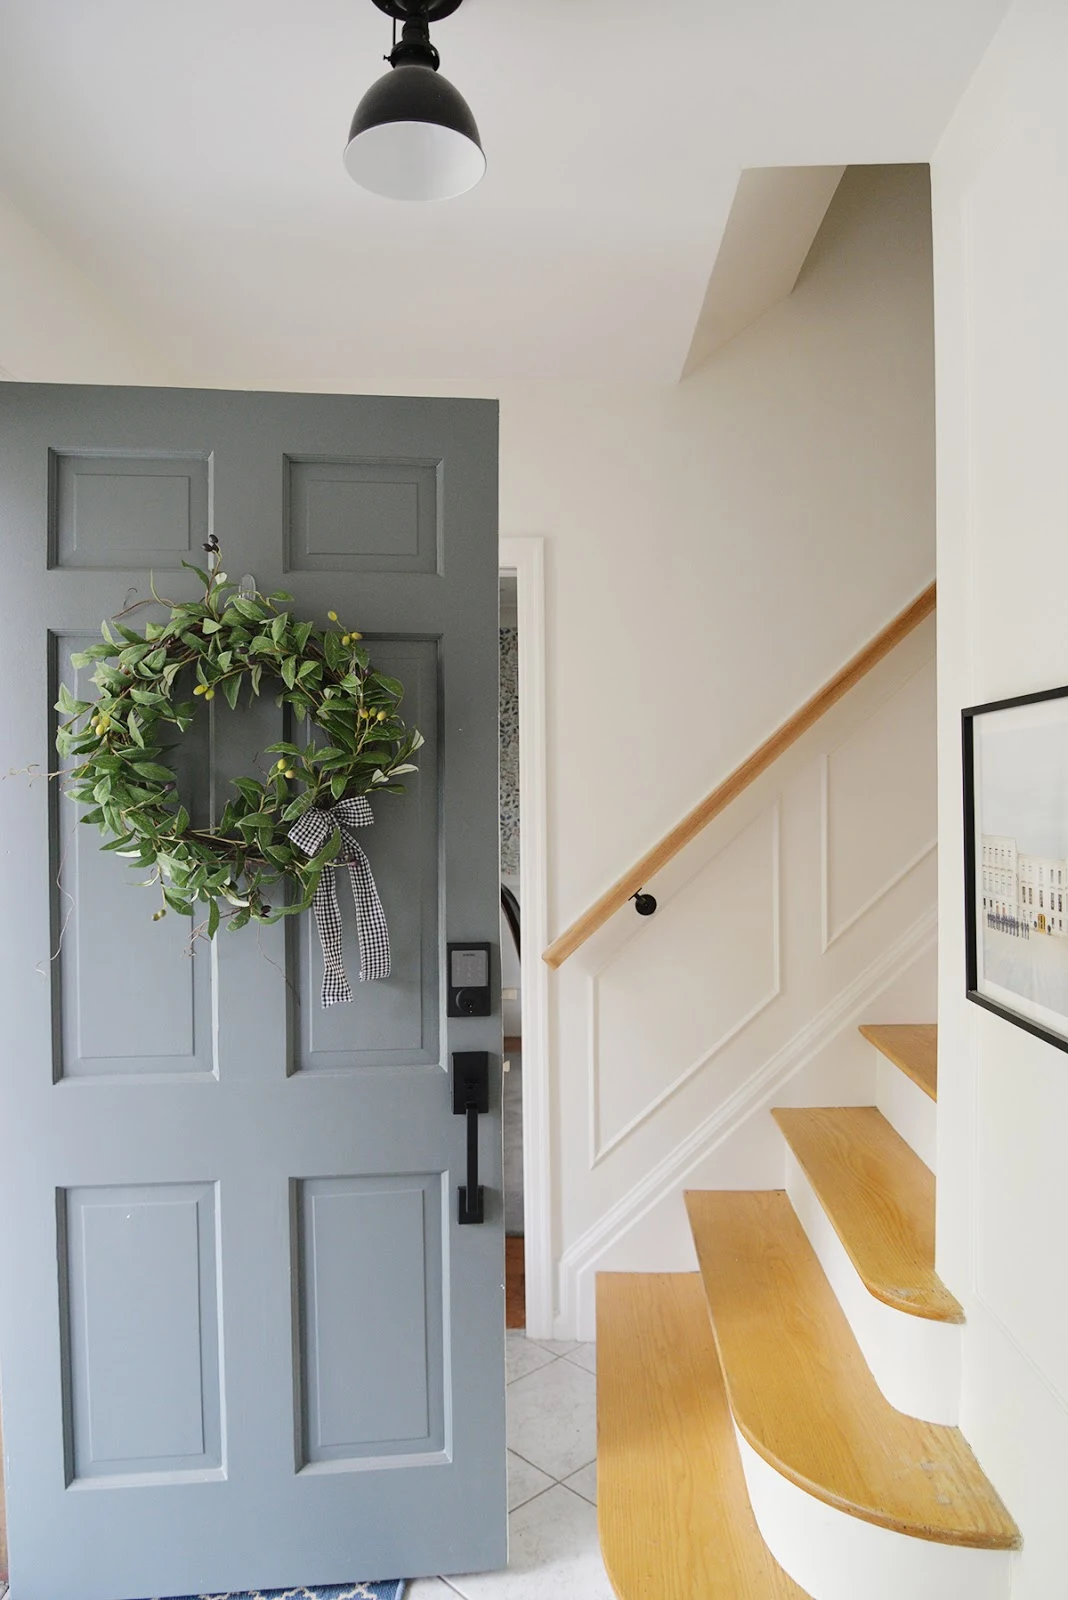 olive wreath on a front door, smart front door lock, grey green painted door